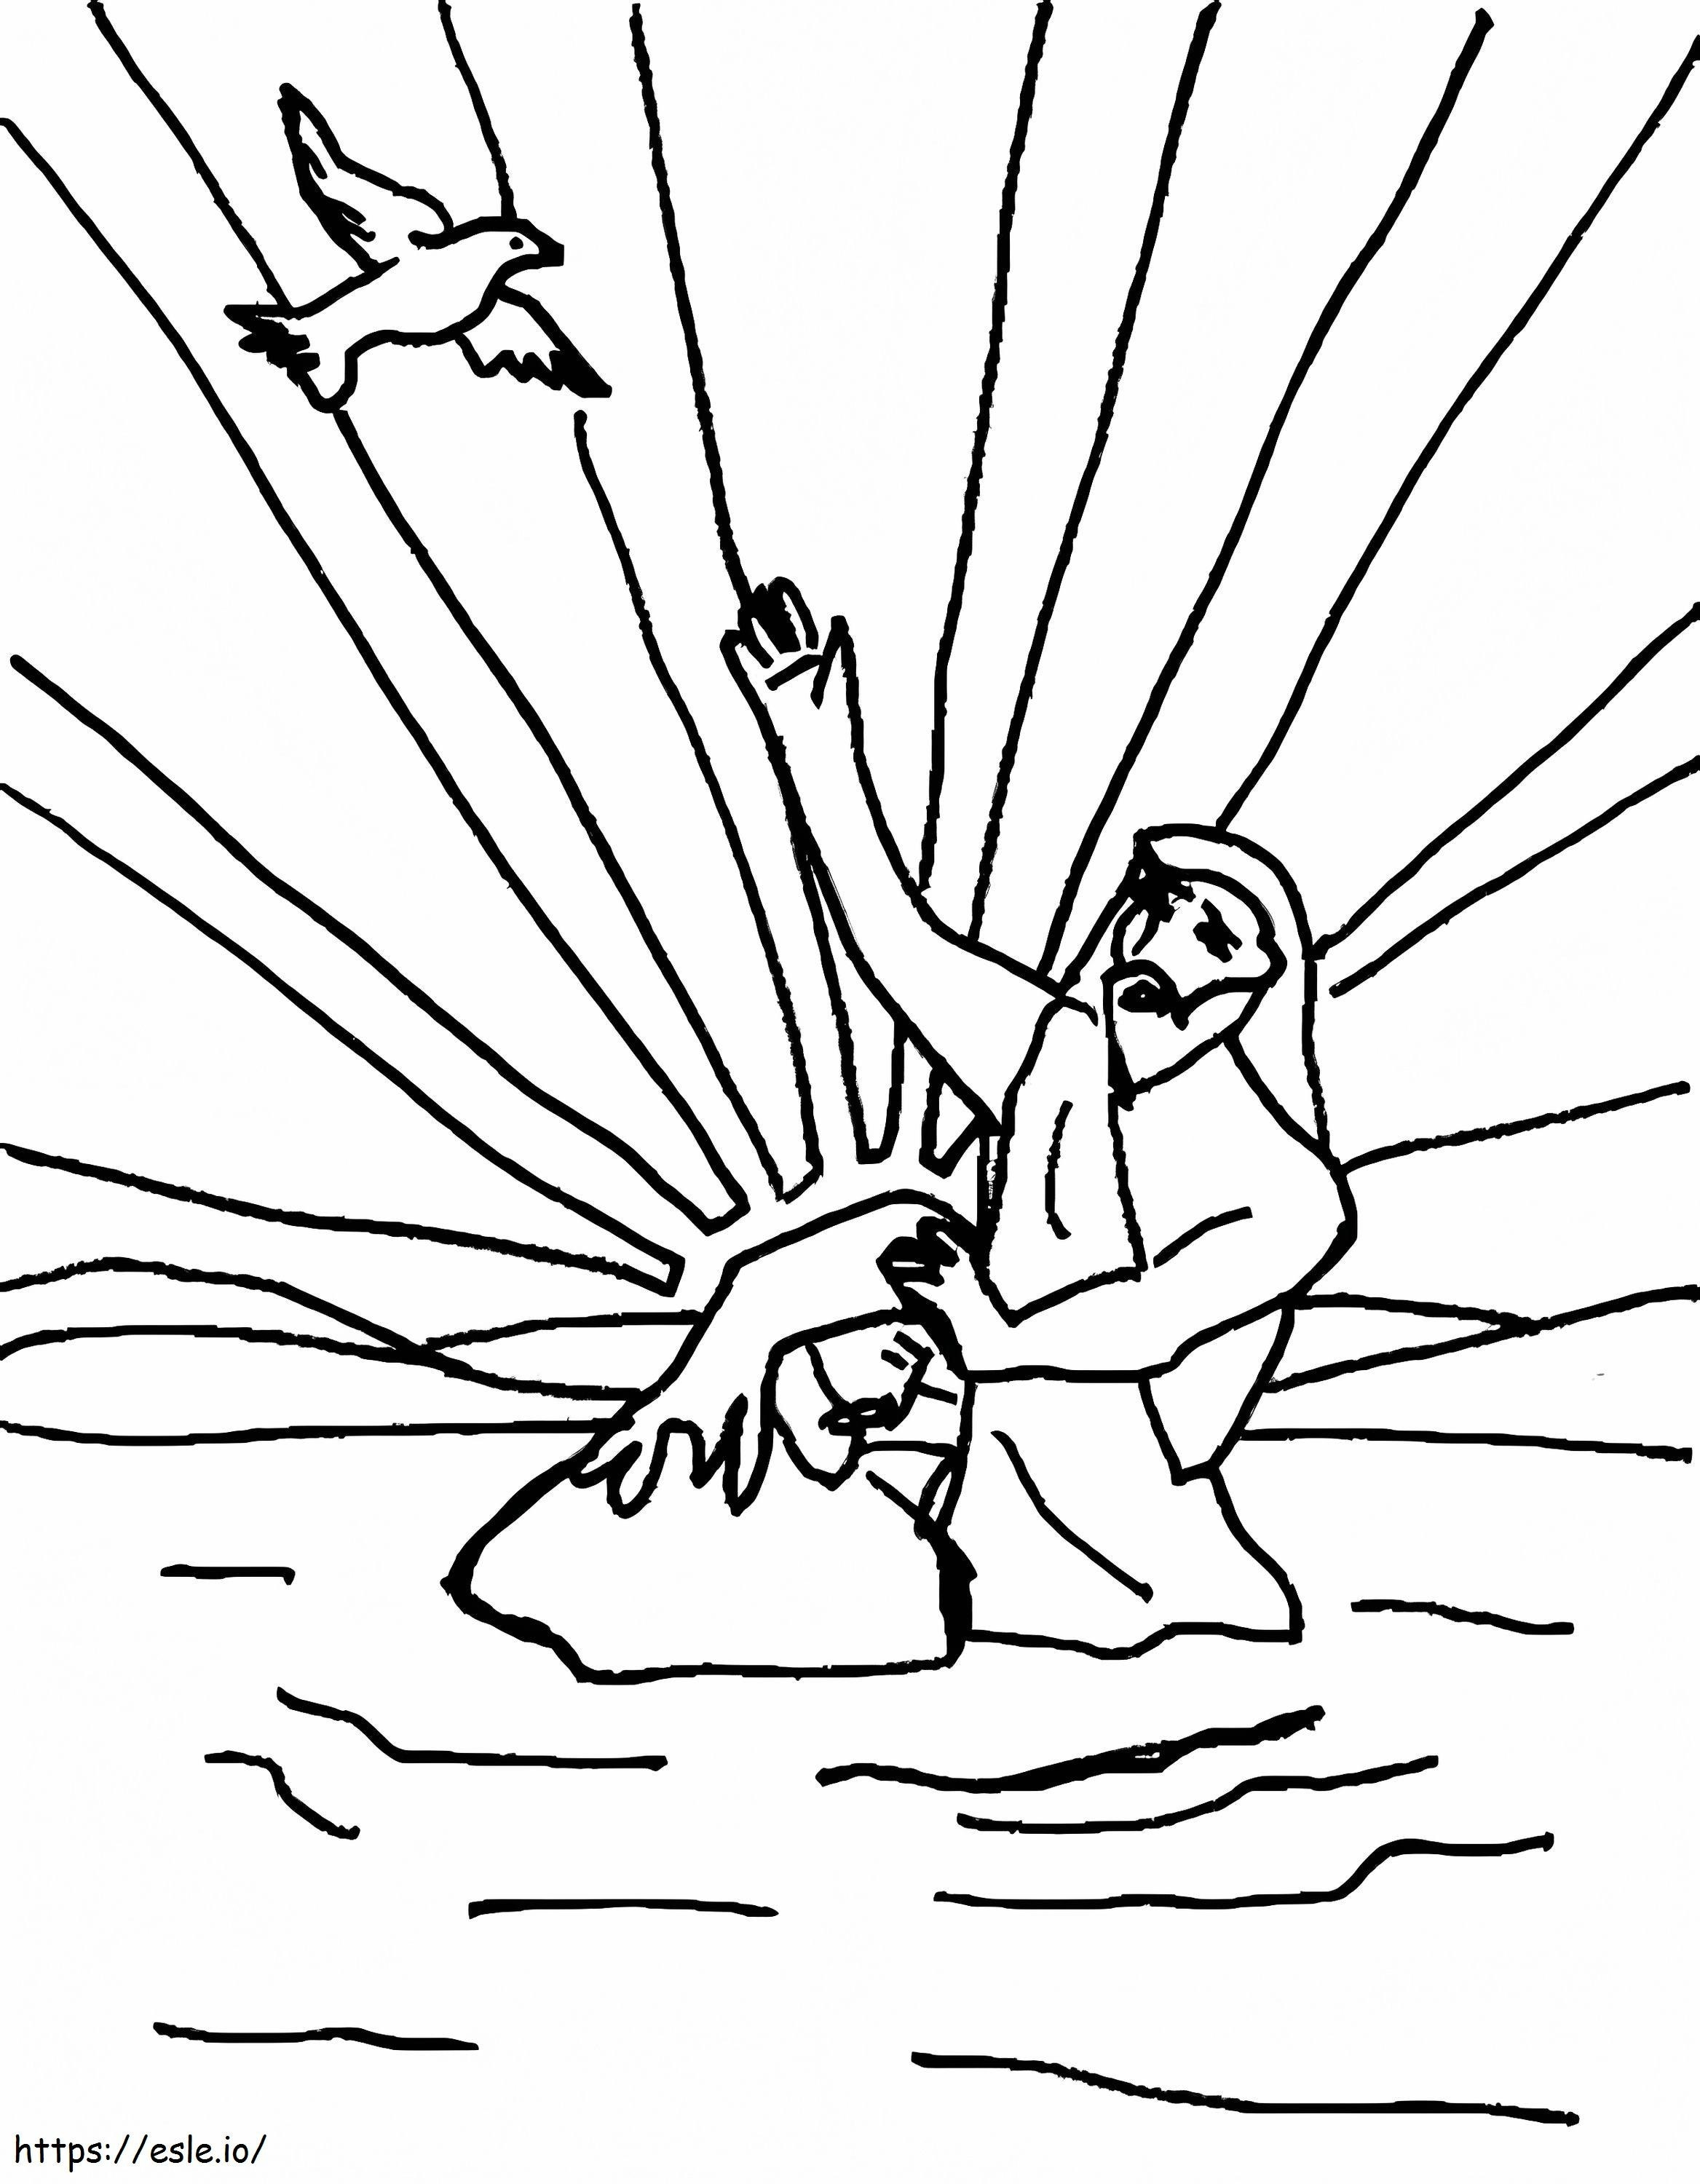 İsa'nın Yazdırılabilir Vaftizi boyama